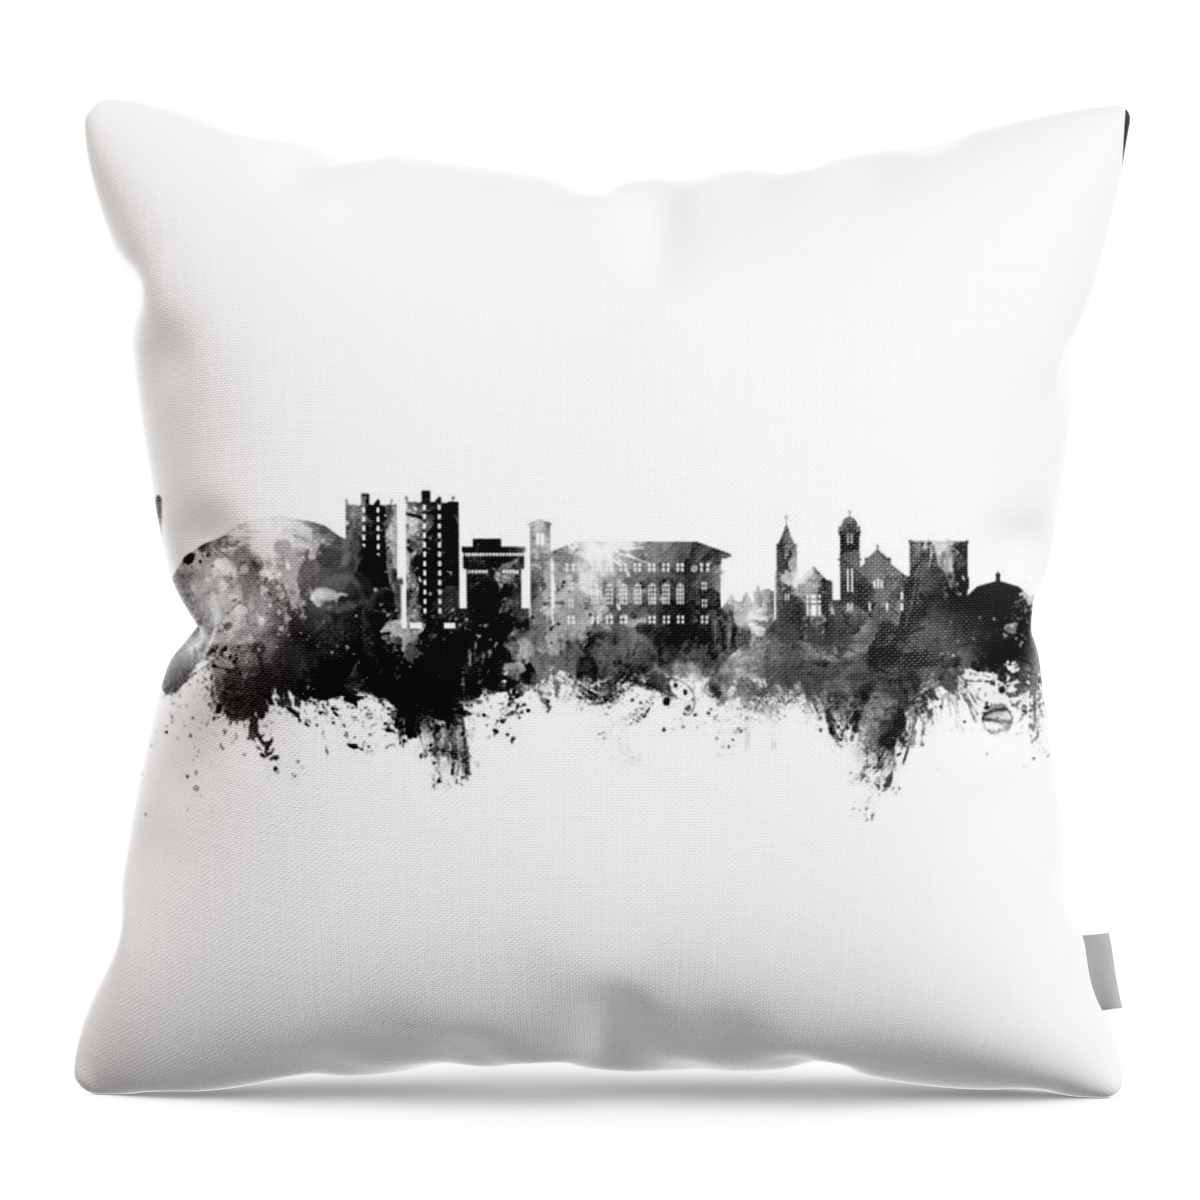 Cedar Falls Throw Pillow featuring the digital art Cedar Falls Iowa Skyline #17 by Michael Tompsett